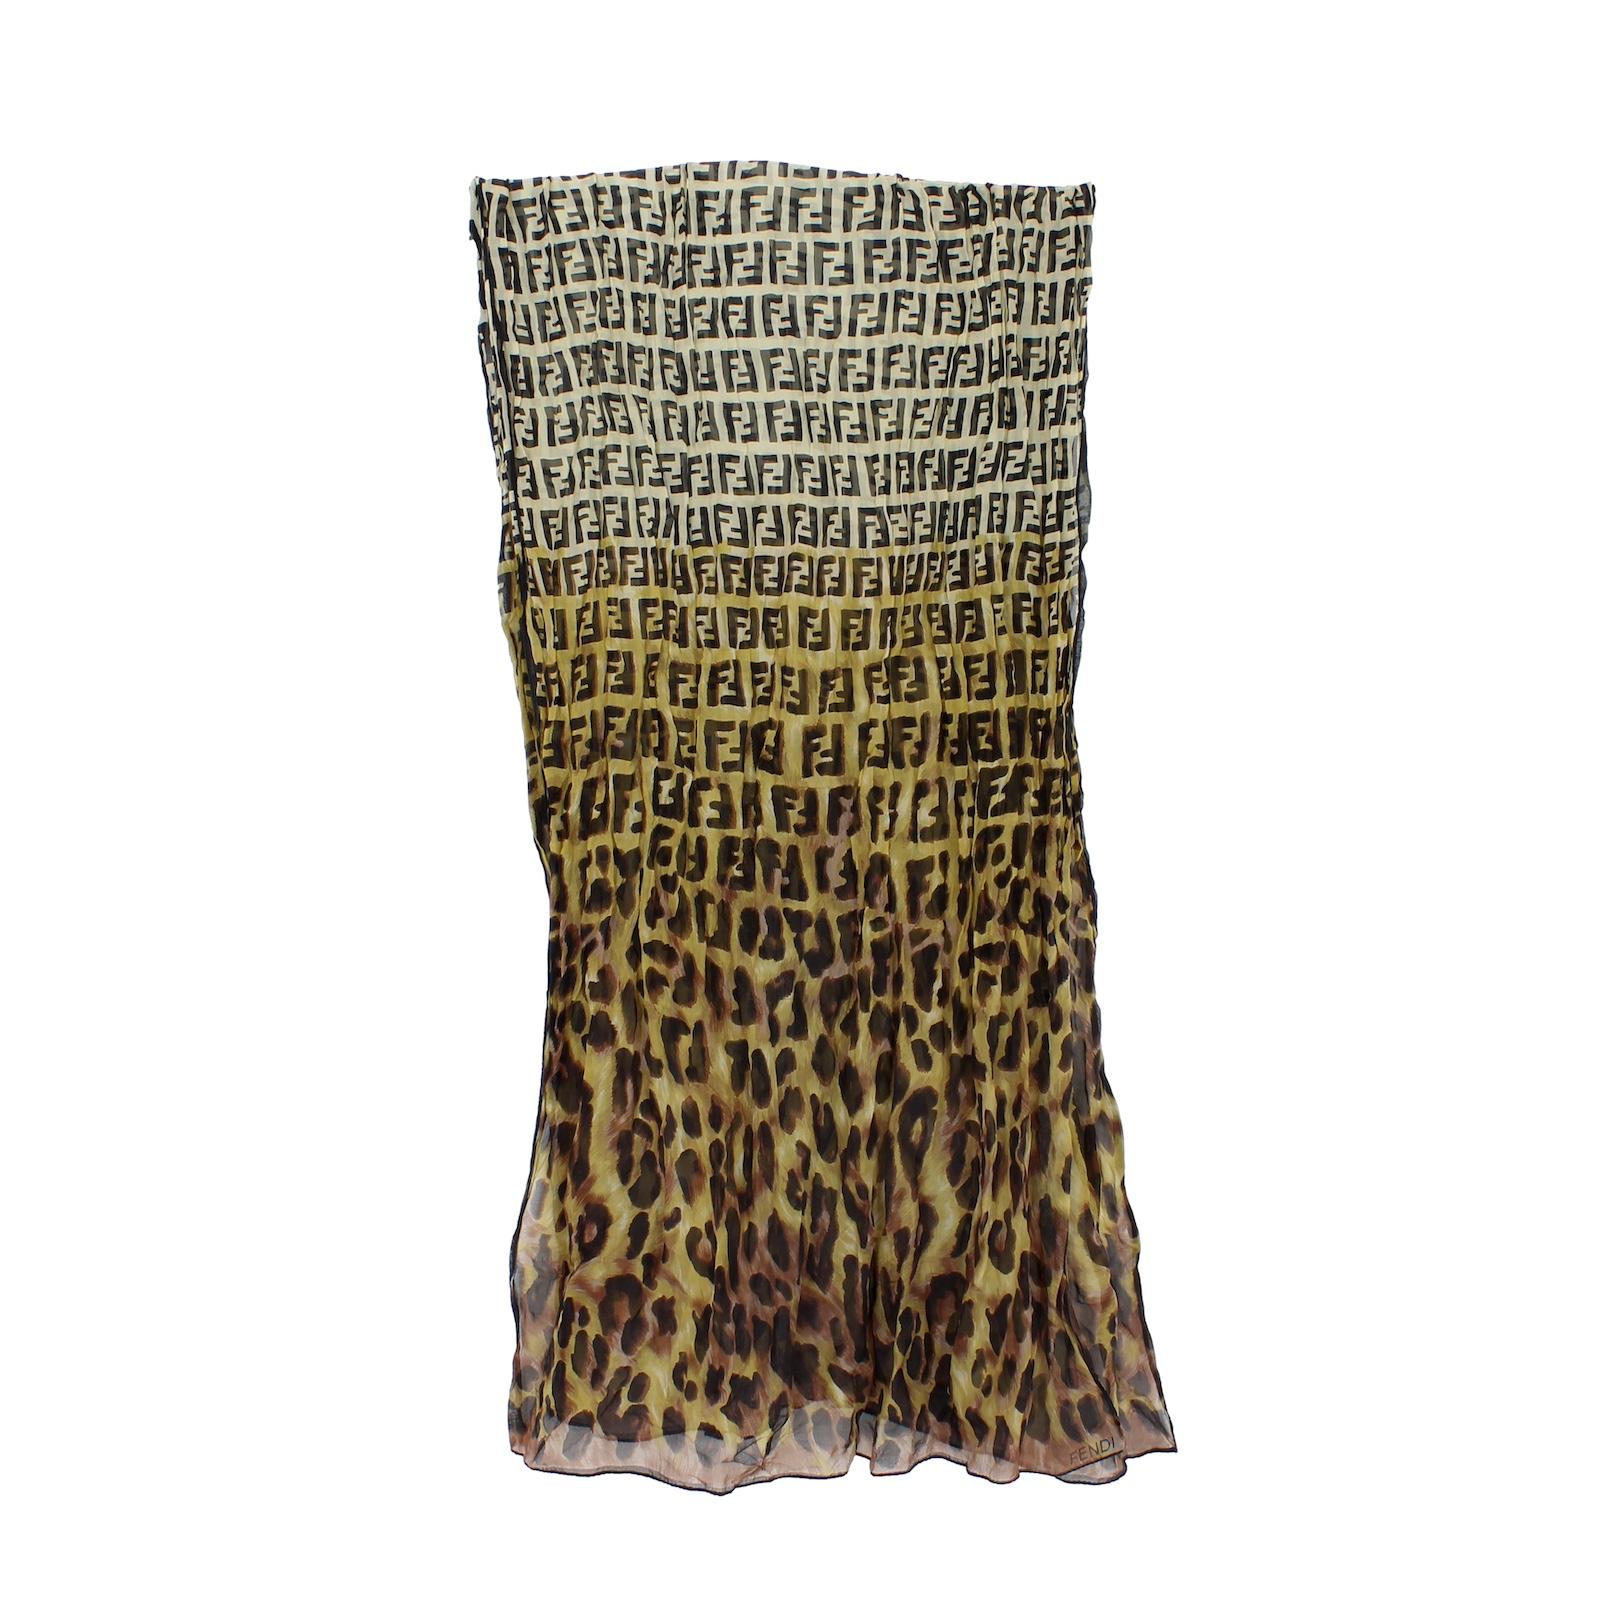 Fendi Zucca animalier Schal 2000er Jahre. Große Stola mit Leopardenmuster und Monogramm, in den Farben braun und beige. stoff aus 100% Seide. Hergestellt in Italien. Etikett fehlt.

Maße: 170 x 60 cm


